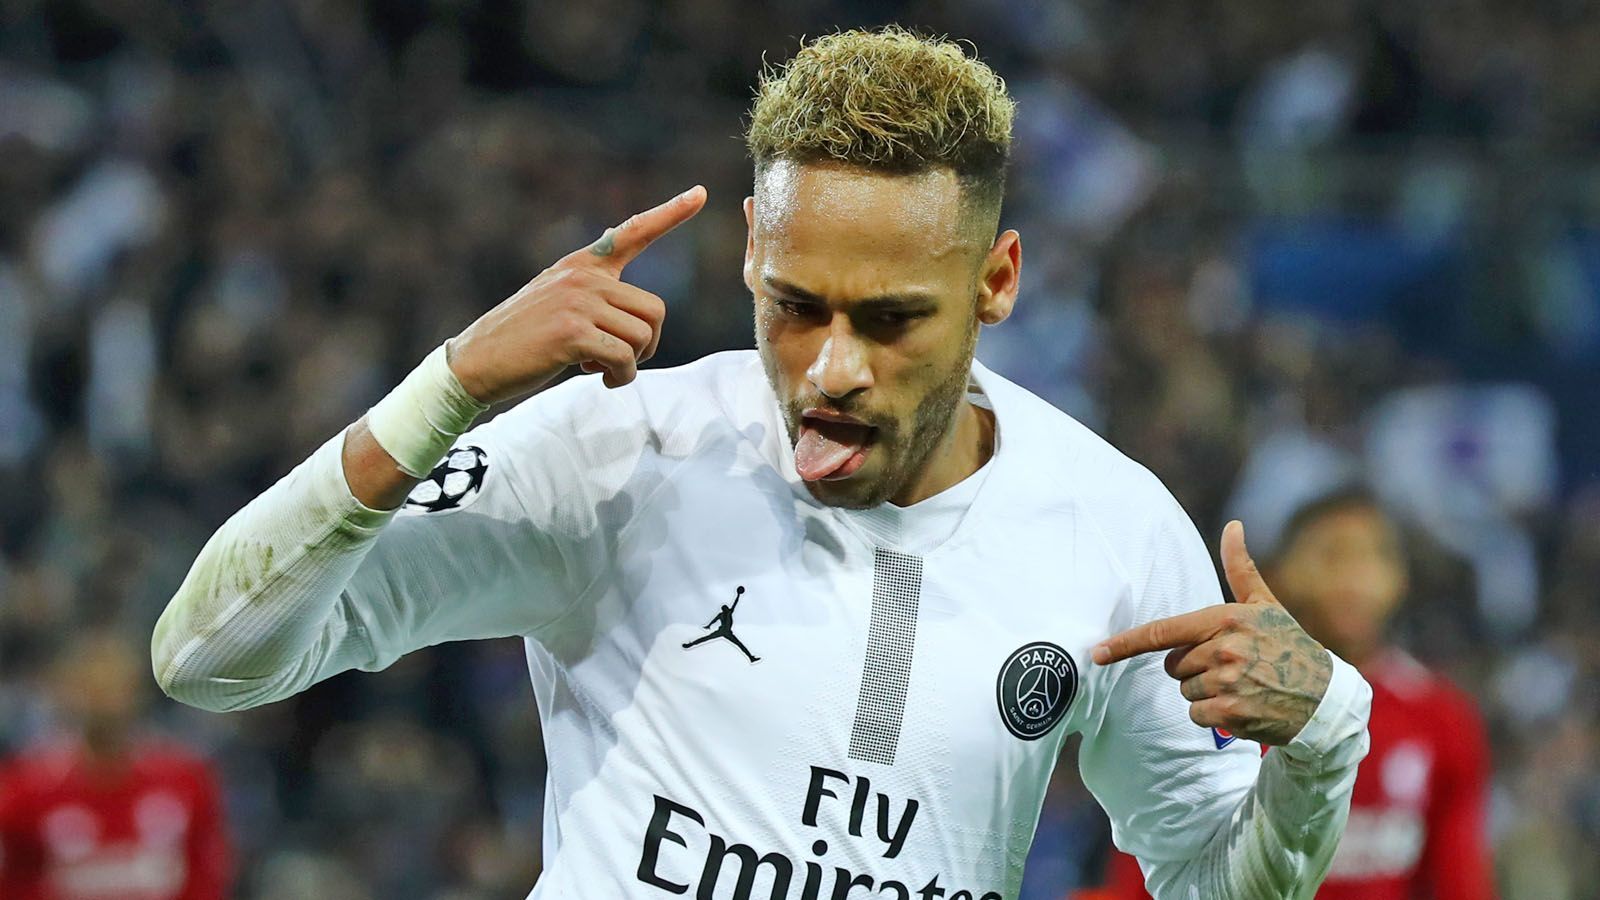 
                <strong>Ligue 1</strong><br>
                Ligue 1: 11. Juni bis 02. September 2019Ein Abschied von Neymar bei Paris Saint-Germain scheint kurz nach dem Beginn der Transferperiode nicht mehr ganz unwahrscheinlich, denn PSG-Präsident Nasser al-Khelaifi macht seinen Stars Druck: "Die Spieler werden noch mehr Verantwortung übernehmen müssen als bisher. Das muss sich komplett ändern. Sie müssen mehr arbeiten, mehr machen. Sie sind nicht hier, um sich zu vergnügen. Und wenn sie nicht einverstanden sind, stehen die Türen offen. Ciao! Ich will keine Starallüren mehr haben", erklärte al-Khelaifi im Interview mit "France Football".
              